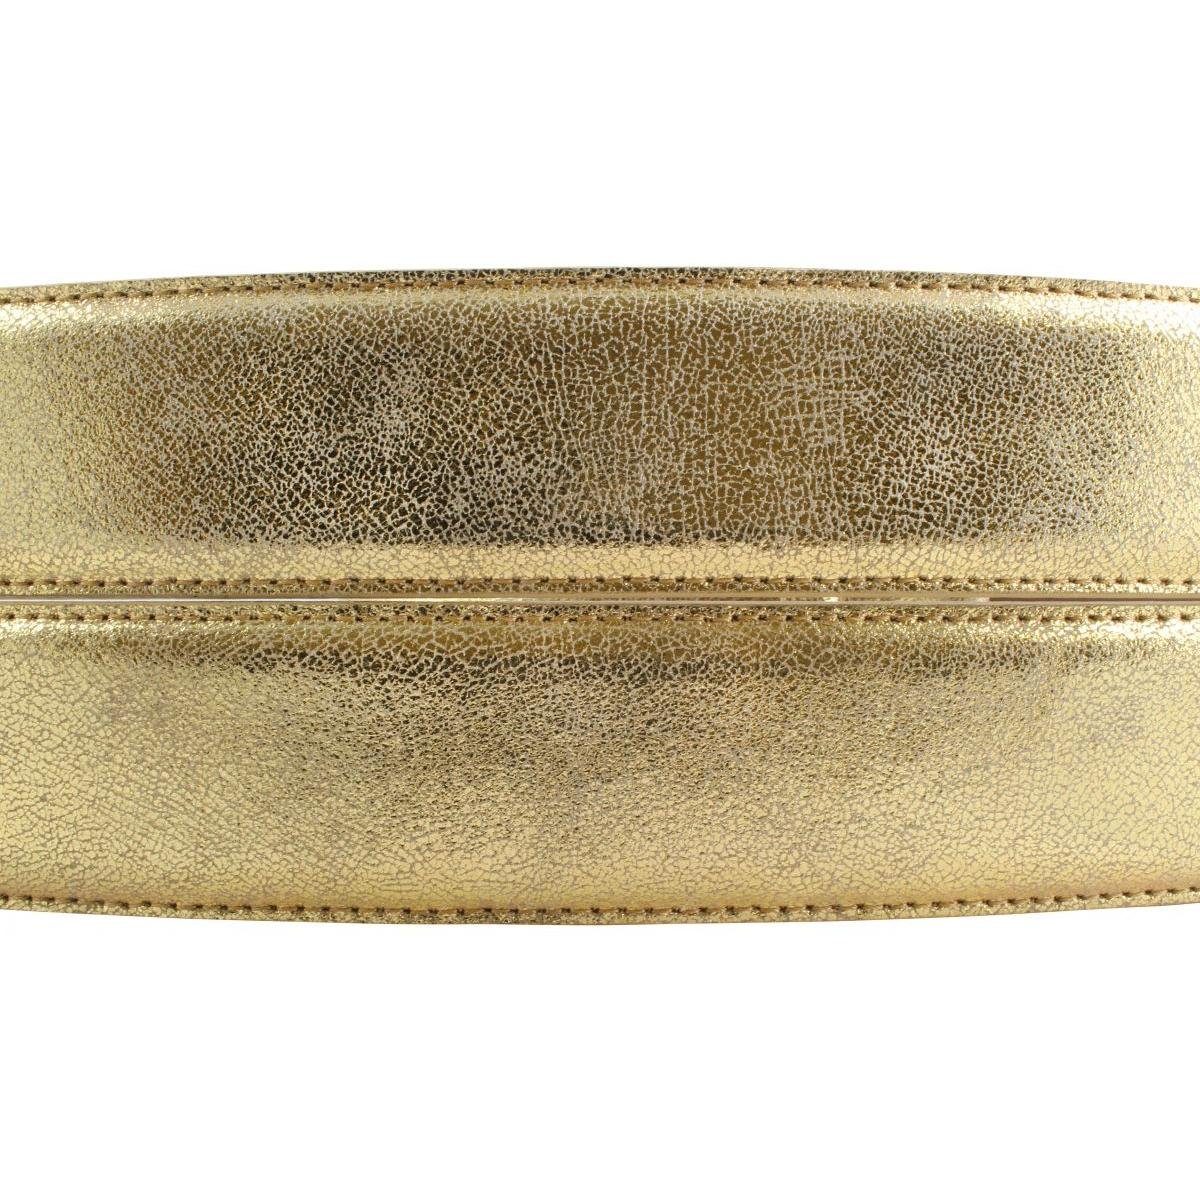 BELTINGER Ledergürtel Goldener Gürtel in Metallic-Look - - 4 40mm Gold Gold, Metall-Optik Metall-Le cm